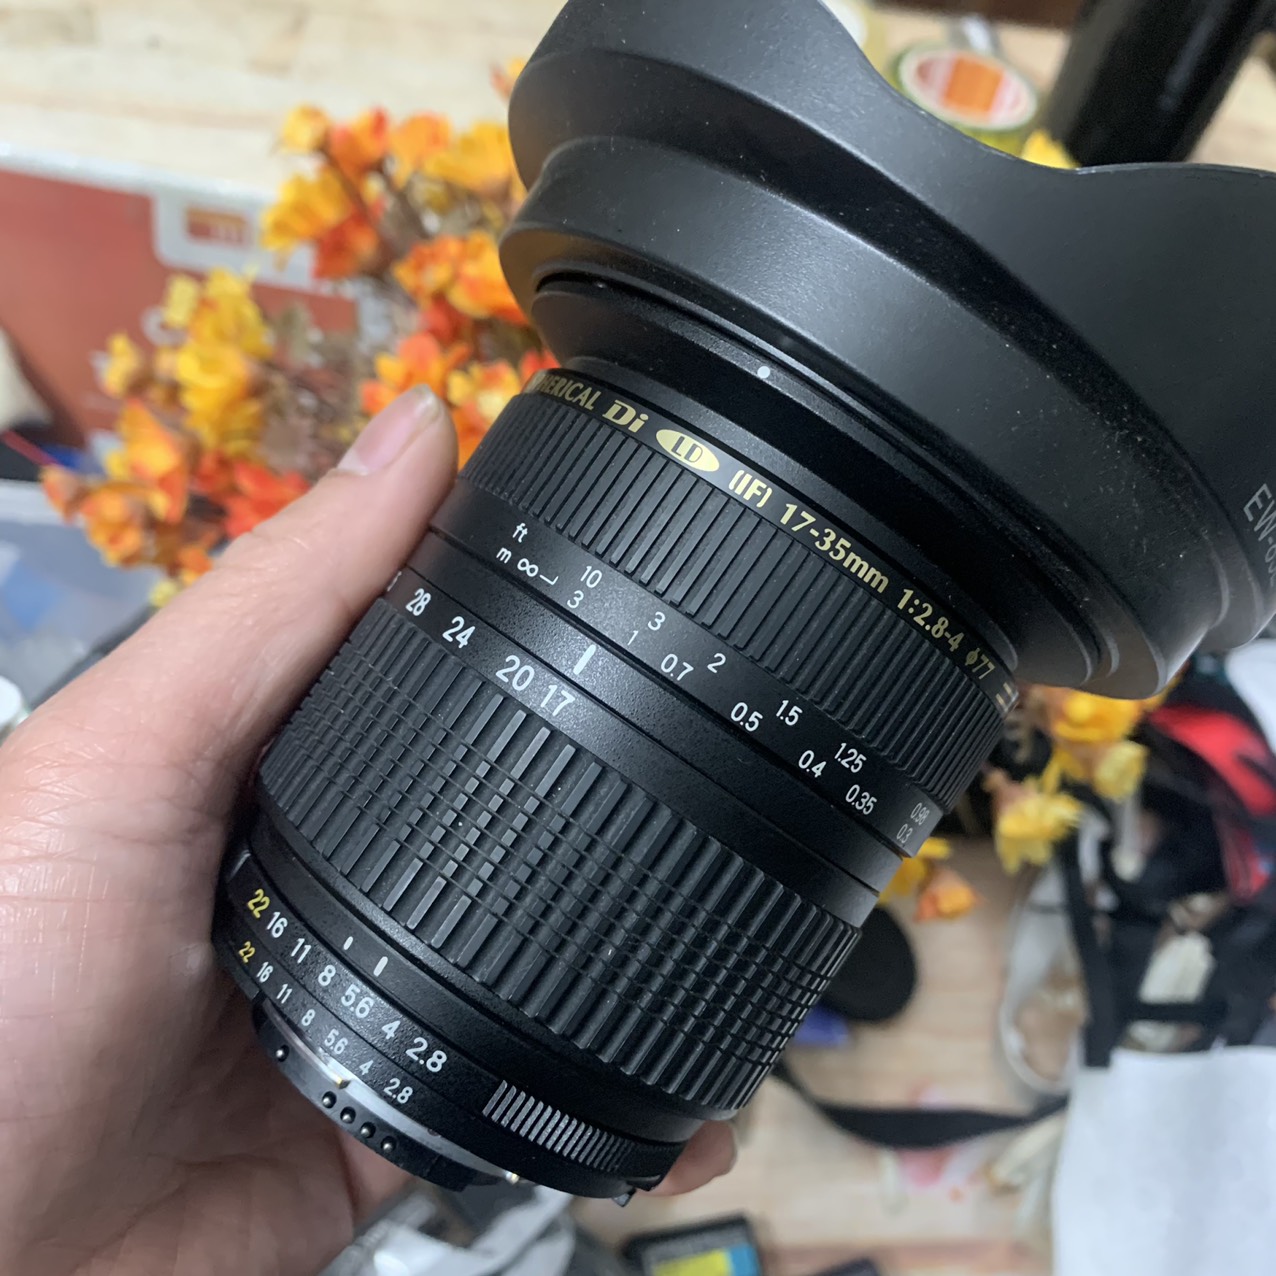 Ống kính Tamron 17-35 f2.8-4 cho máy ảnh Nikon fullframe và Crop